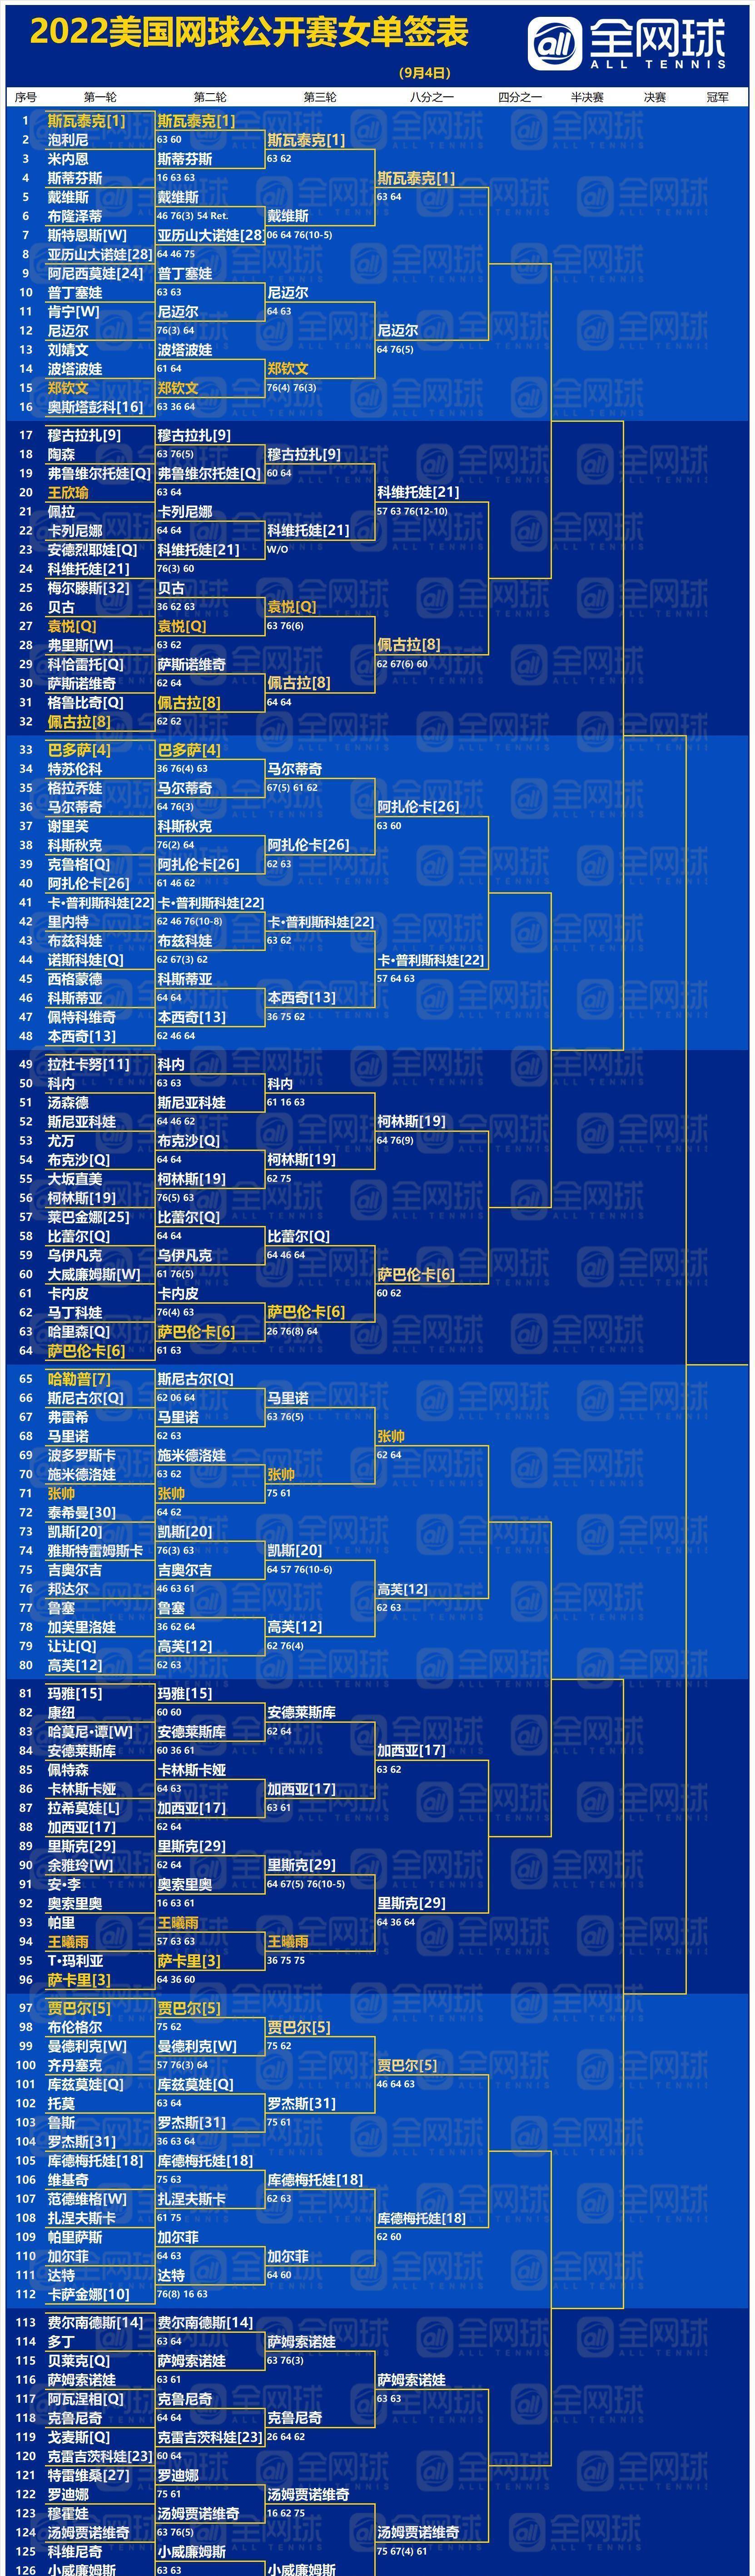 观赛攻略 22美网第6场回顾及第7场前瞻 种子 中国 成绩